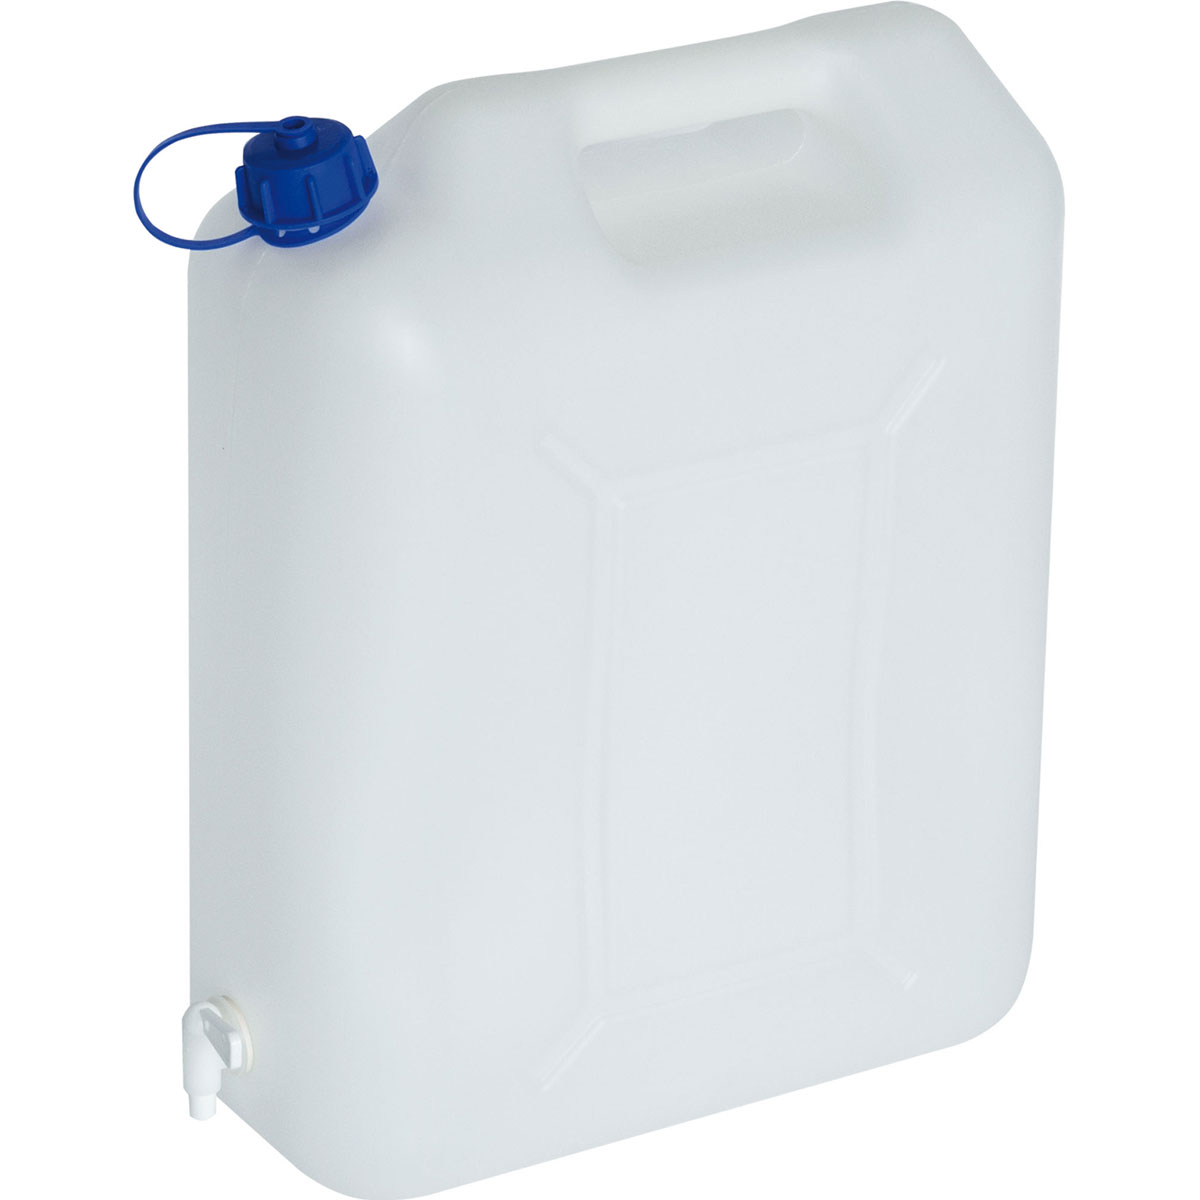 Wasserkanister mit Hahn 20L Kanister Trinkwasserkanister